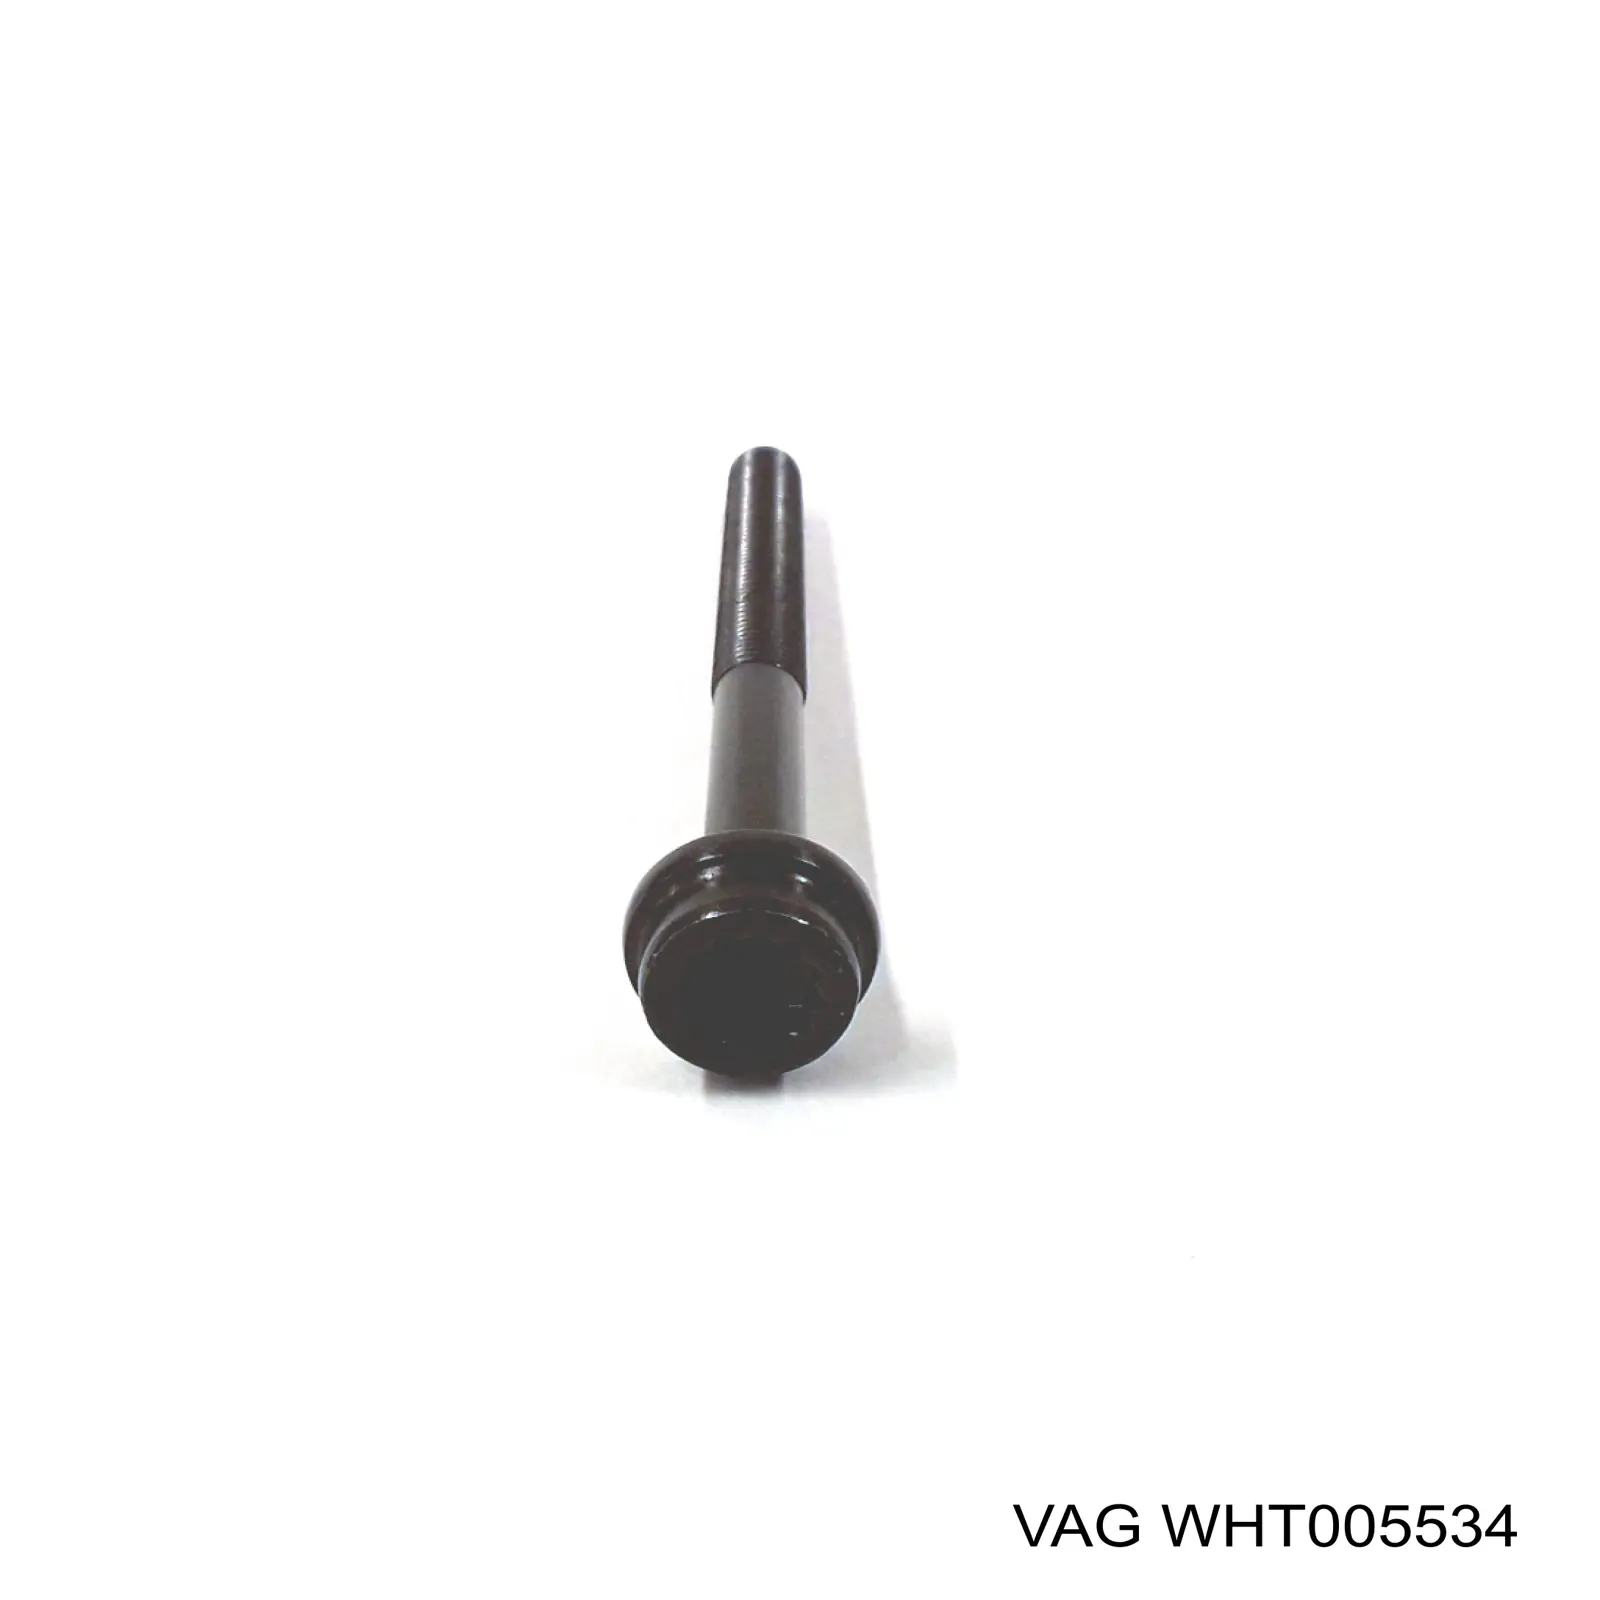 WHT005534 VAG tornillo de culata